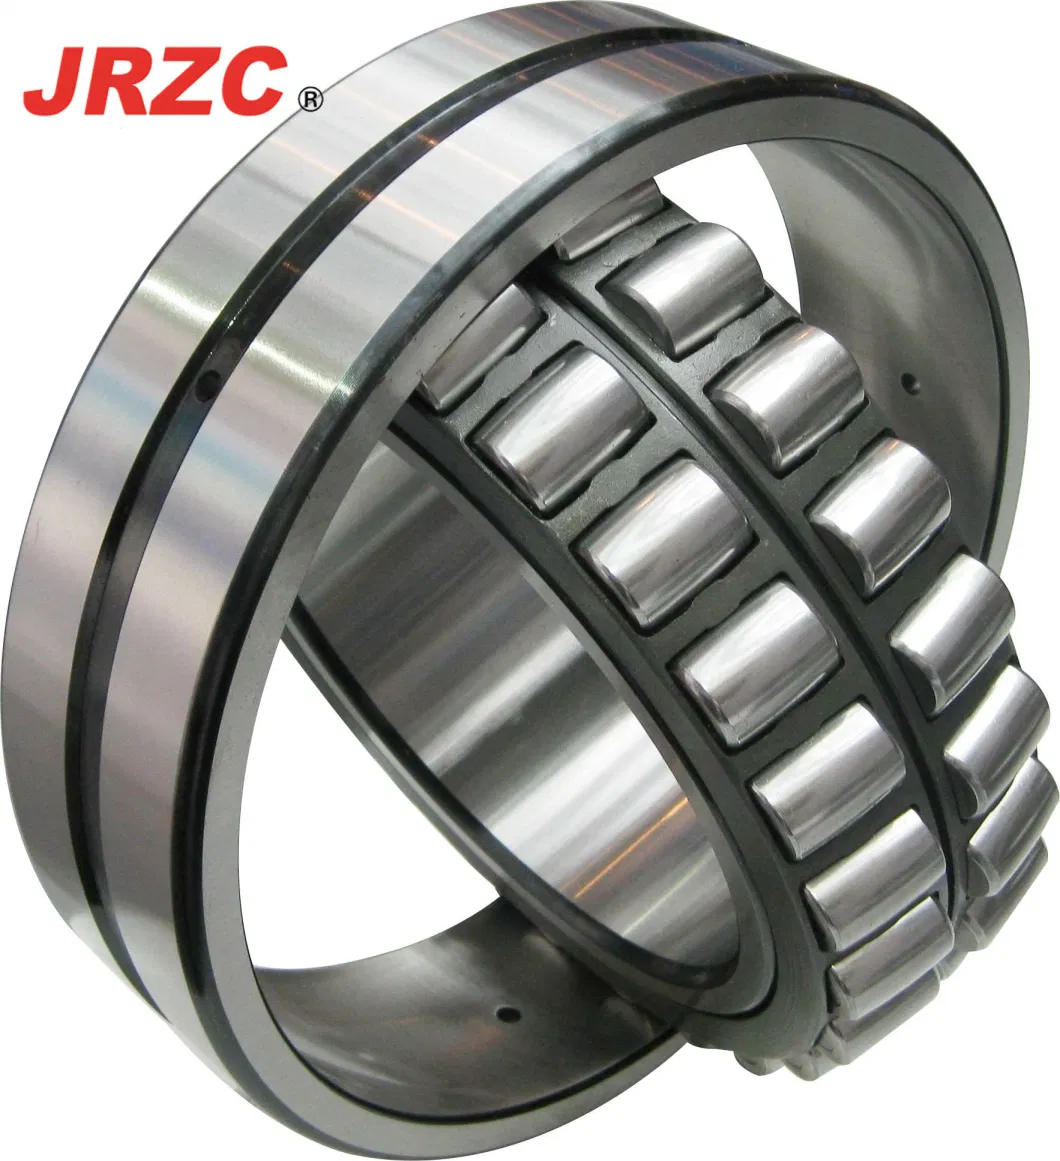 Timken NSK NTN Roller Bearings Distributor 22324cc/W33 Spherical Needle Tapered Roller Bearings